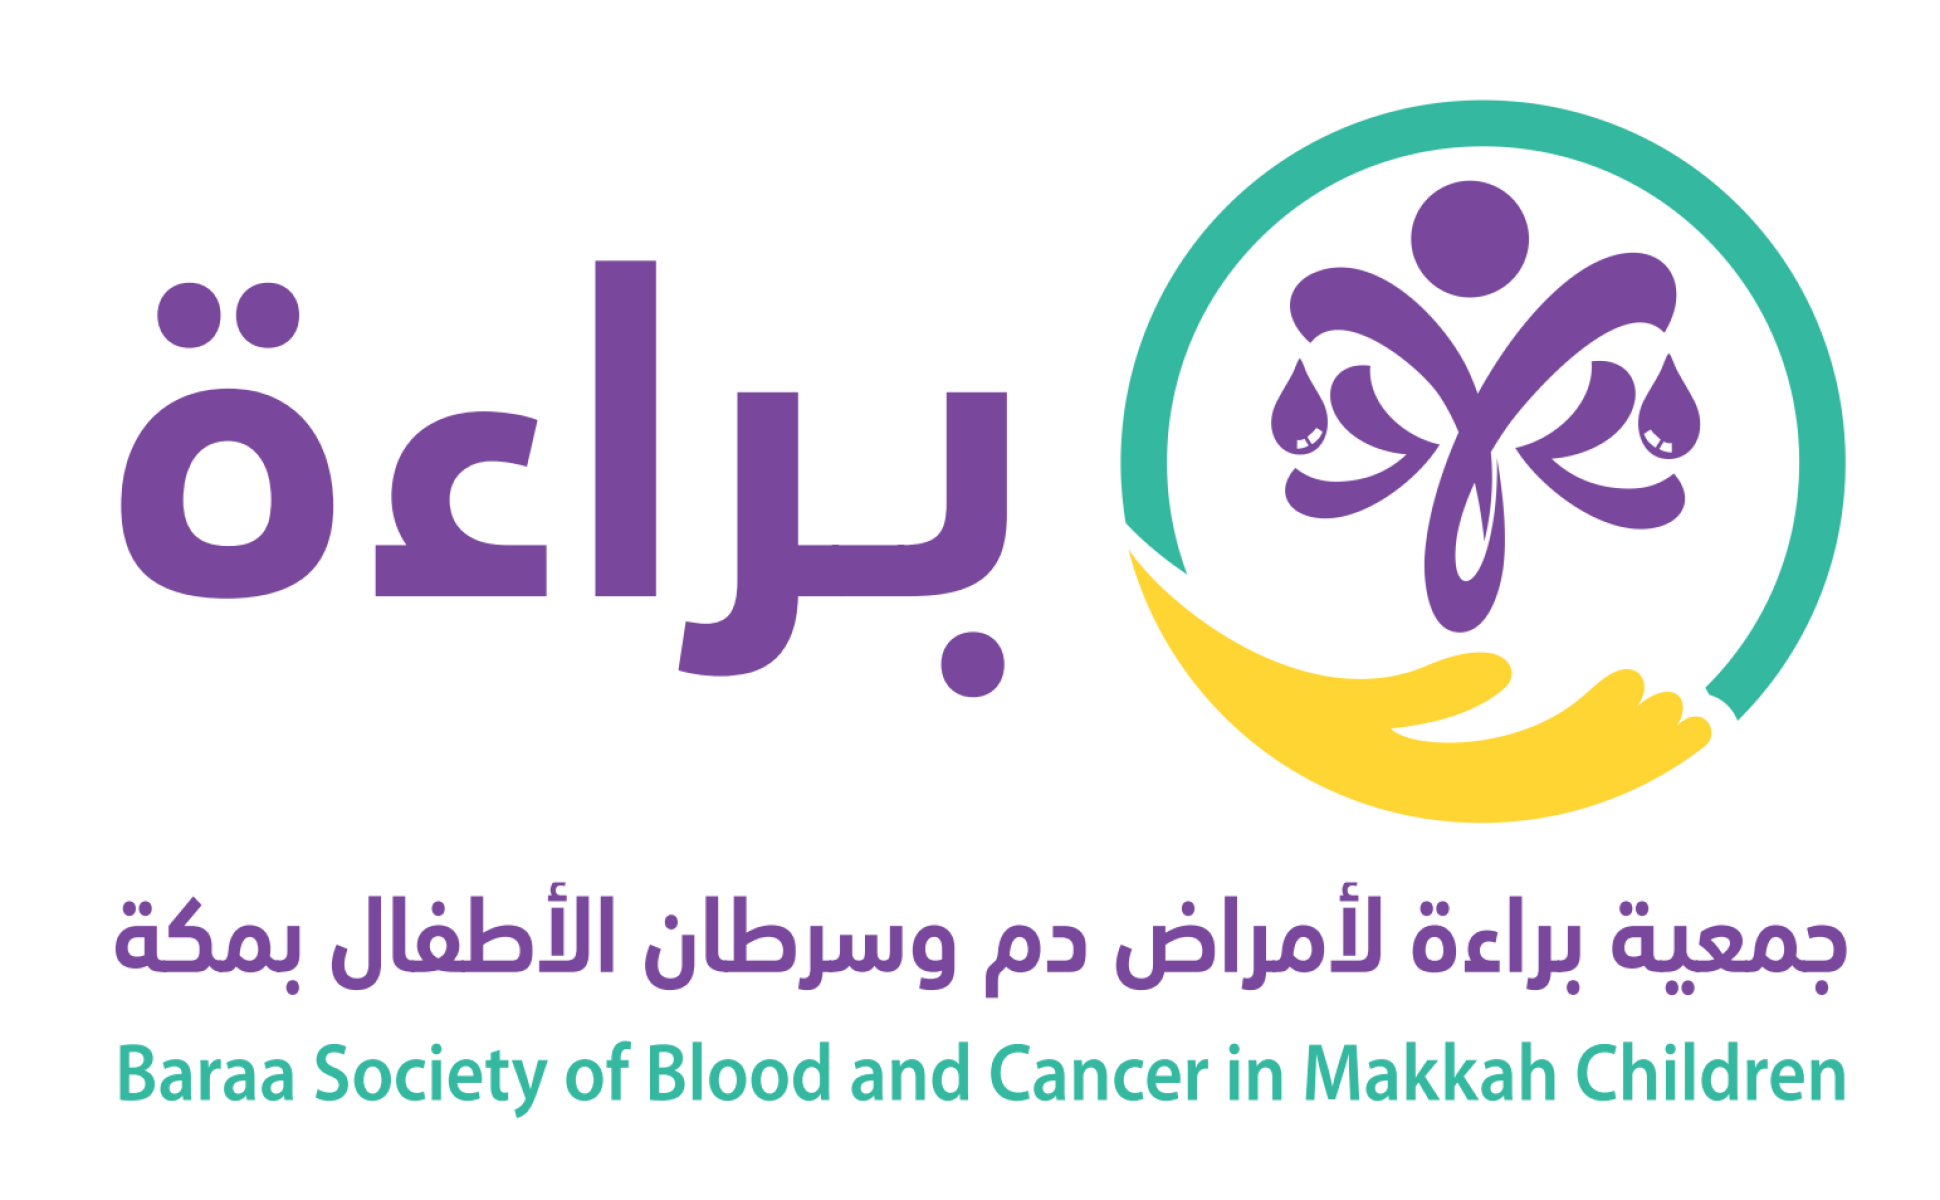 جمعية براءة لأمراض دم وسرطان الأطفال بمكة